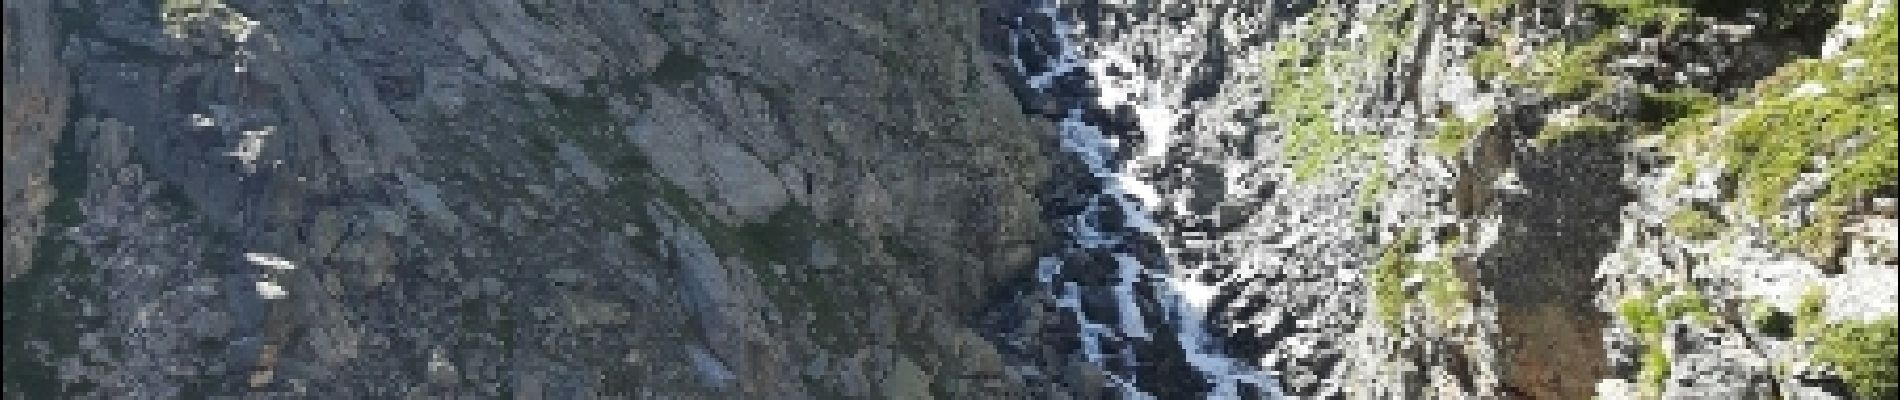 POI Bonneval-sur-Arc - la cascade de la Reculaz - Photo